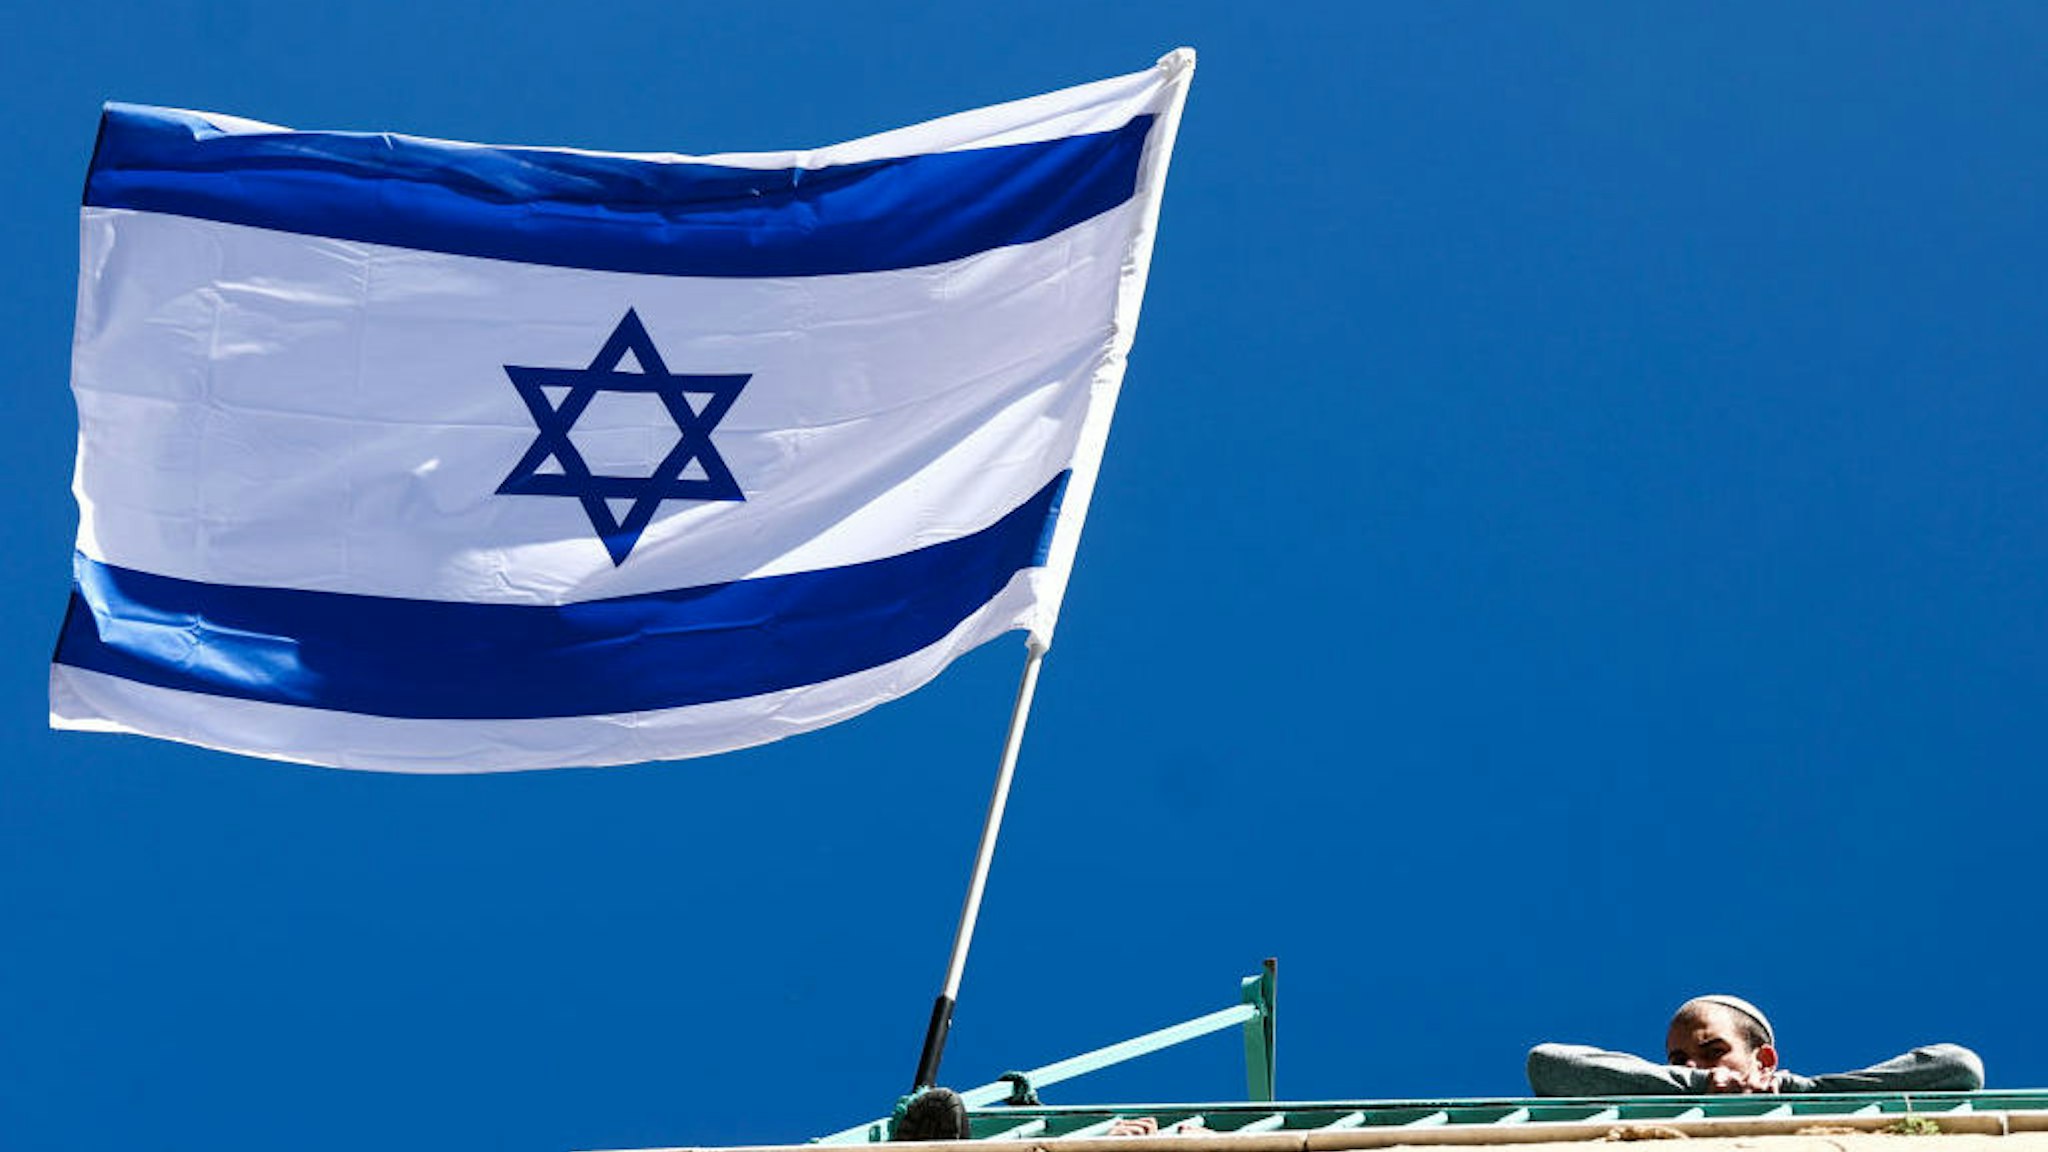 Israeli flag is seen in the Old City in Jerusalem, Israel on December 29, 2022. (Photo by Jakub Porzycki/NurPhoto)